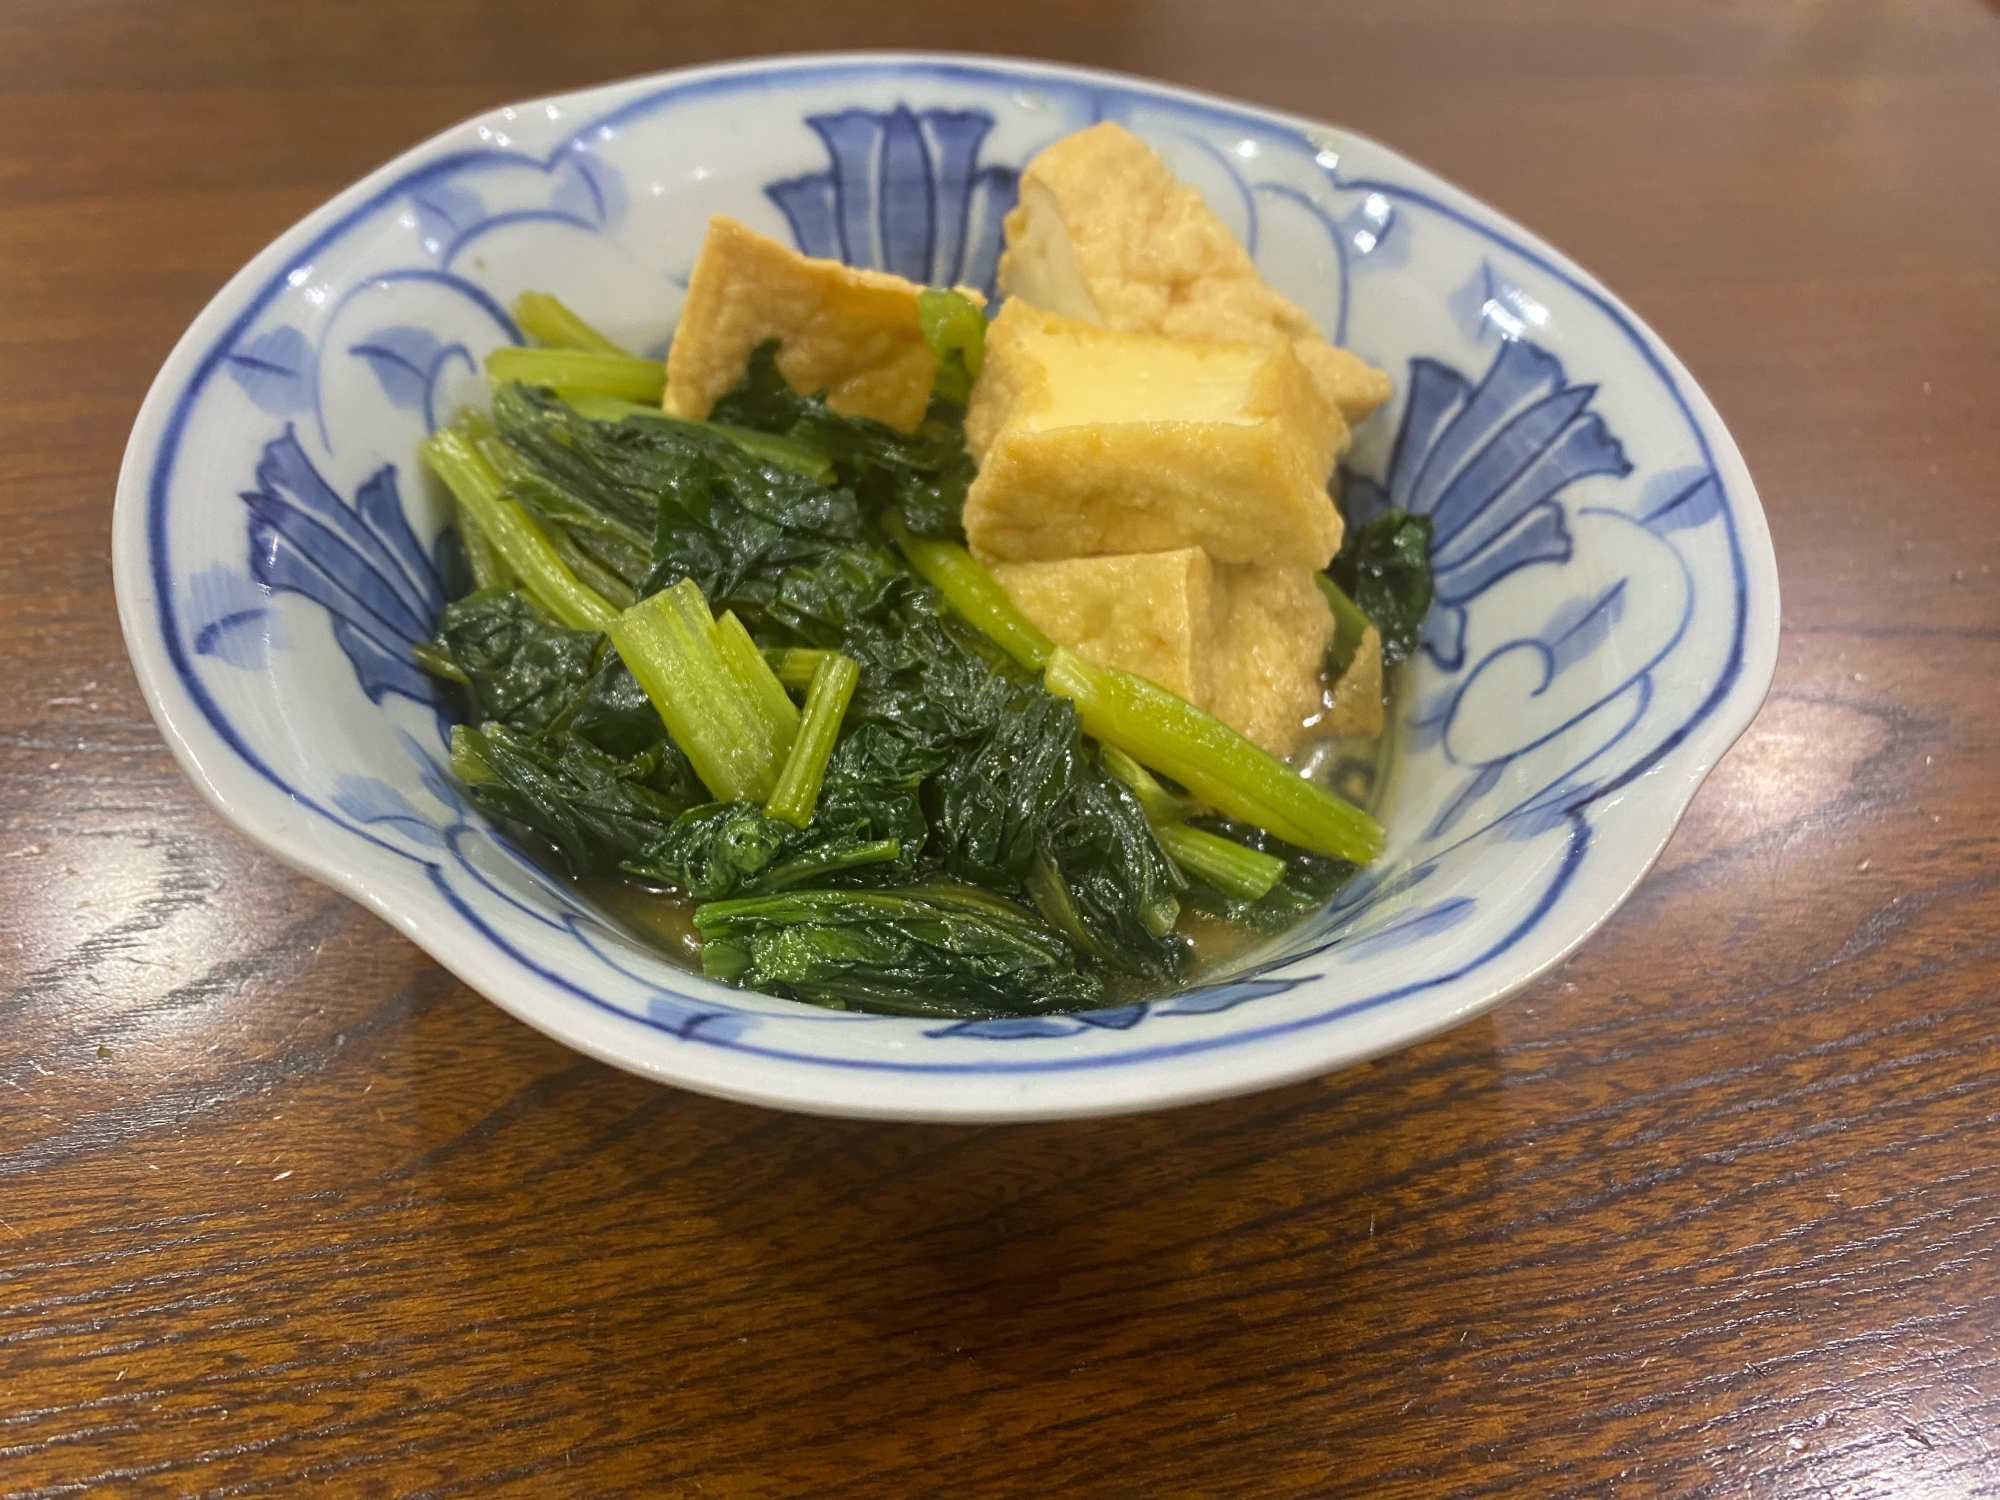 小松菜と厚揚げの美味しい煮物